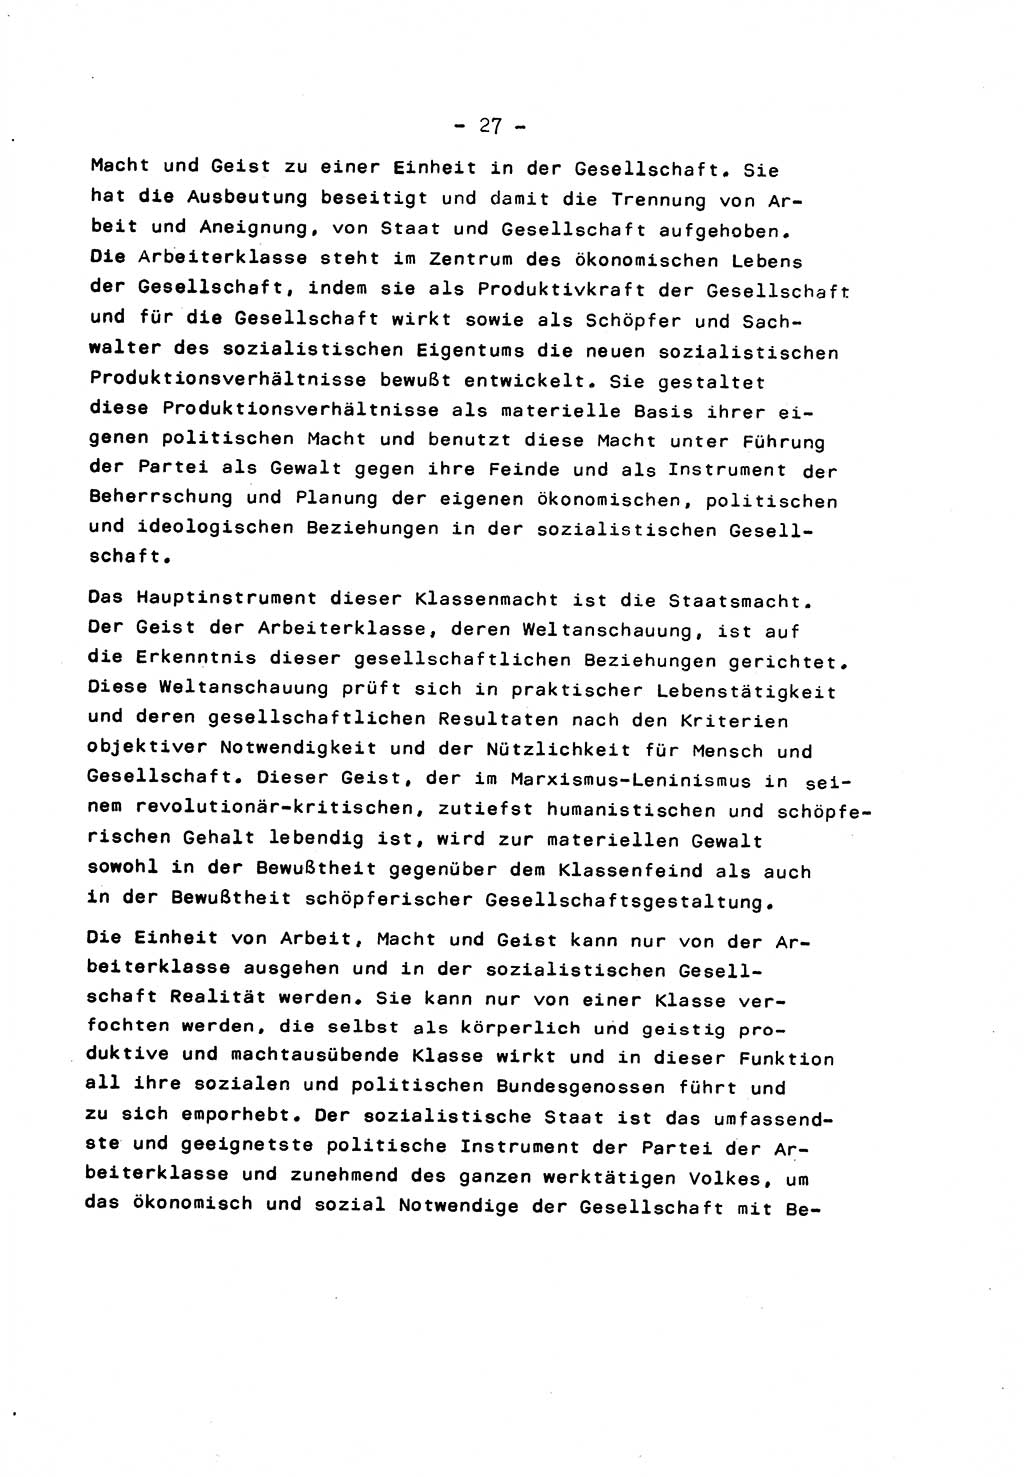 Marxistisch-leninistische Staats- und Rechtstheorie [Deutsche Demokratische Republik (DDR)] 1975, Seite 27 (ML St.-R.-Th. DDR 1975, S. 27)